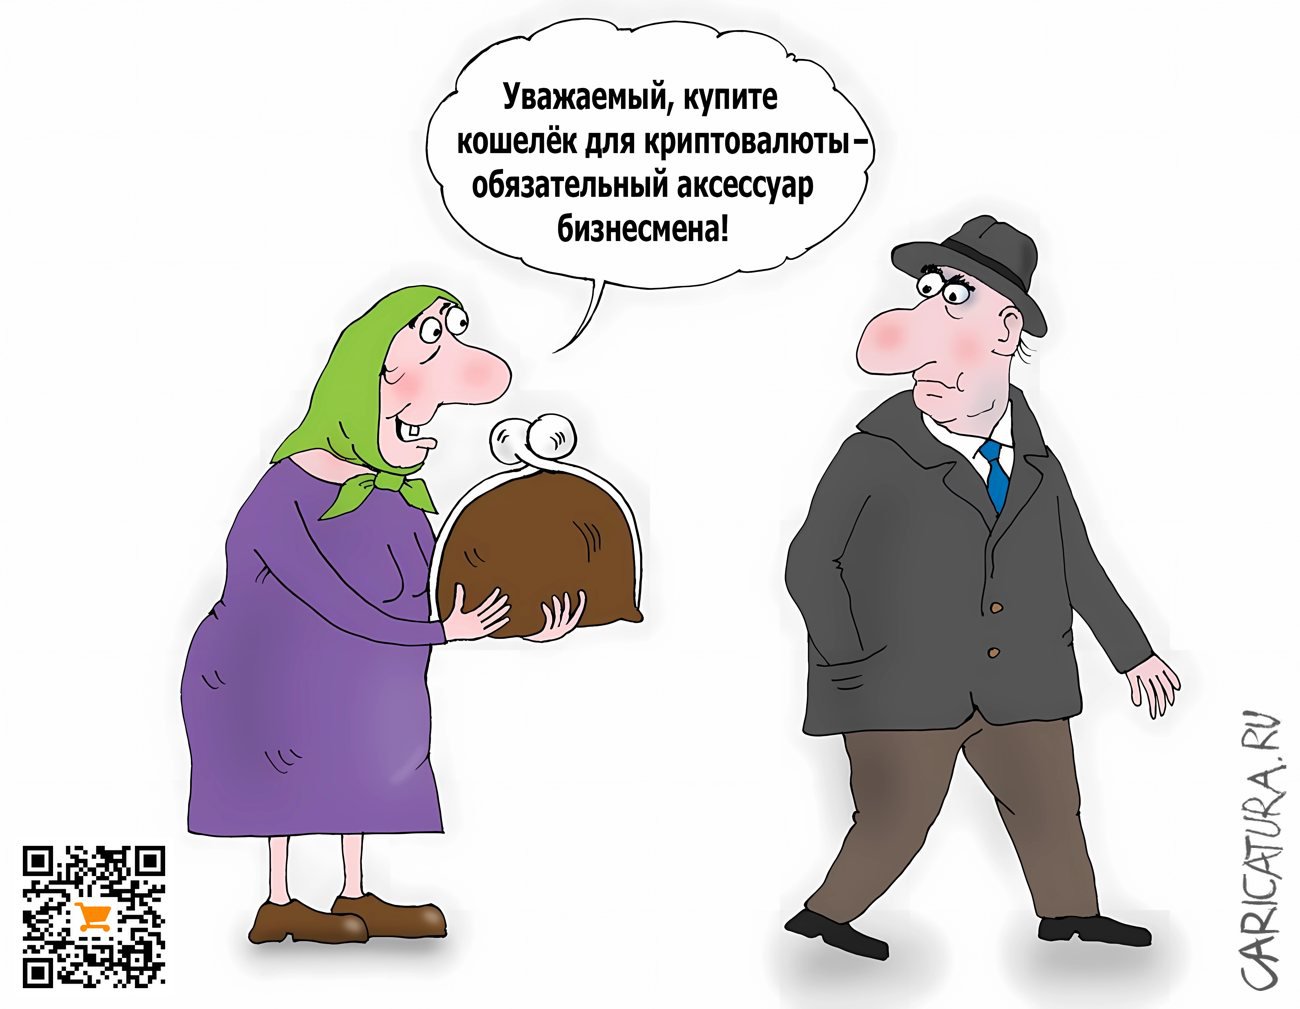 Карикатура "Кошелек", Валерий Тарасенко